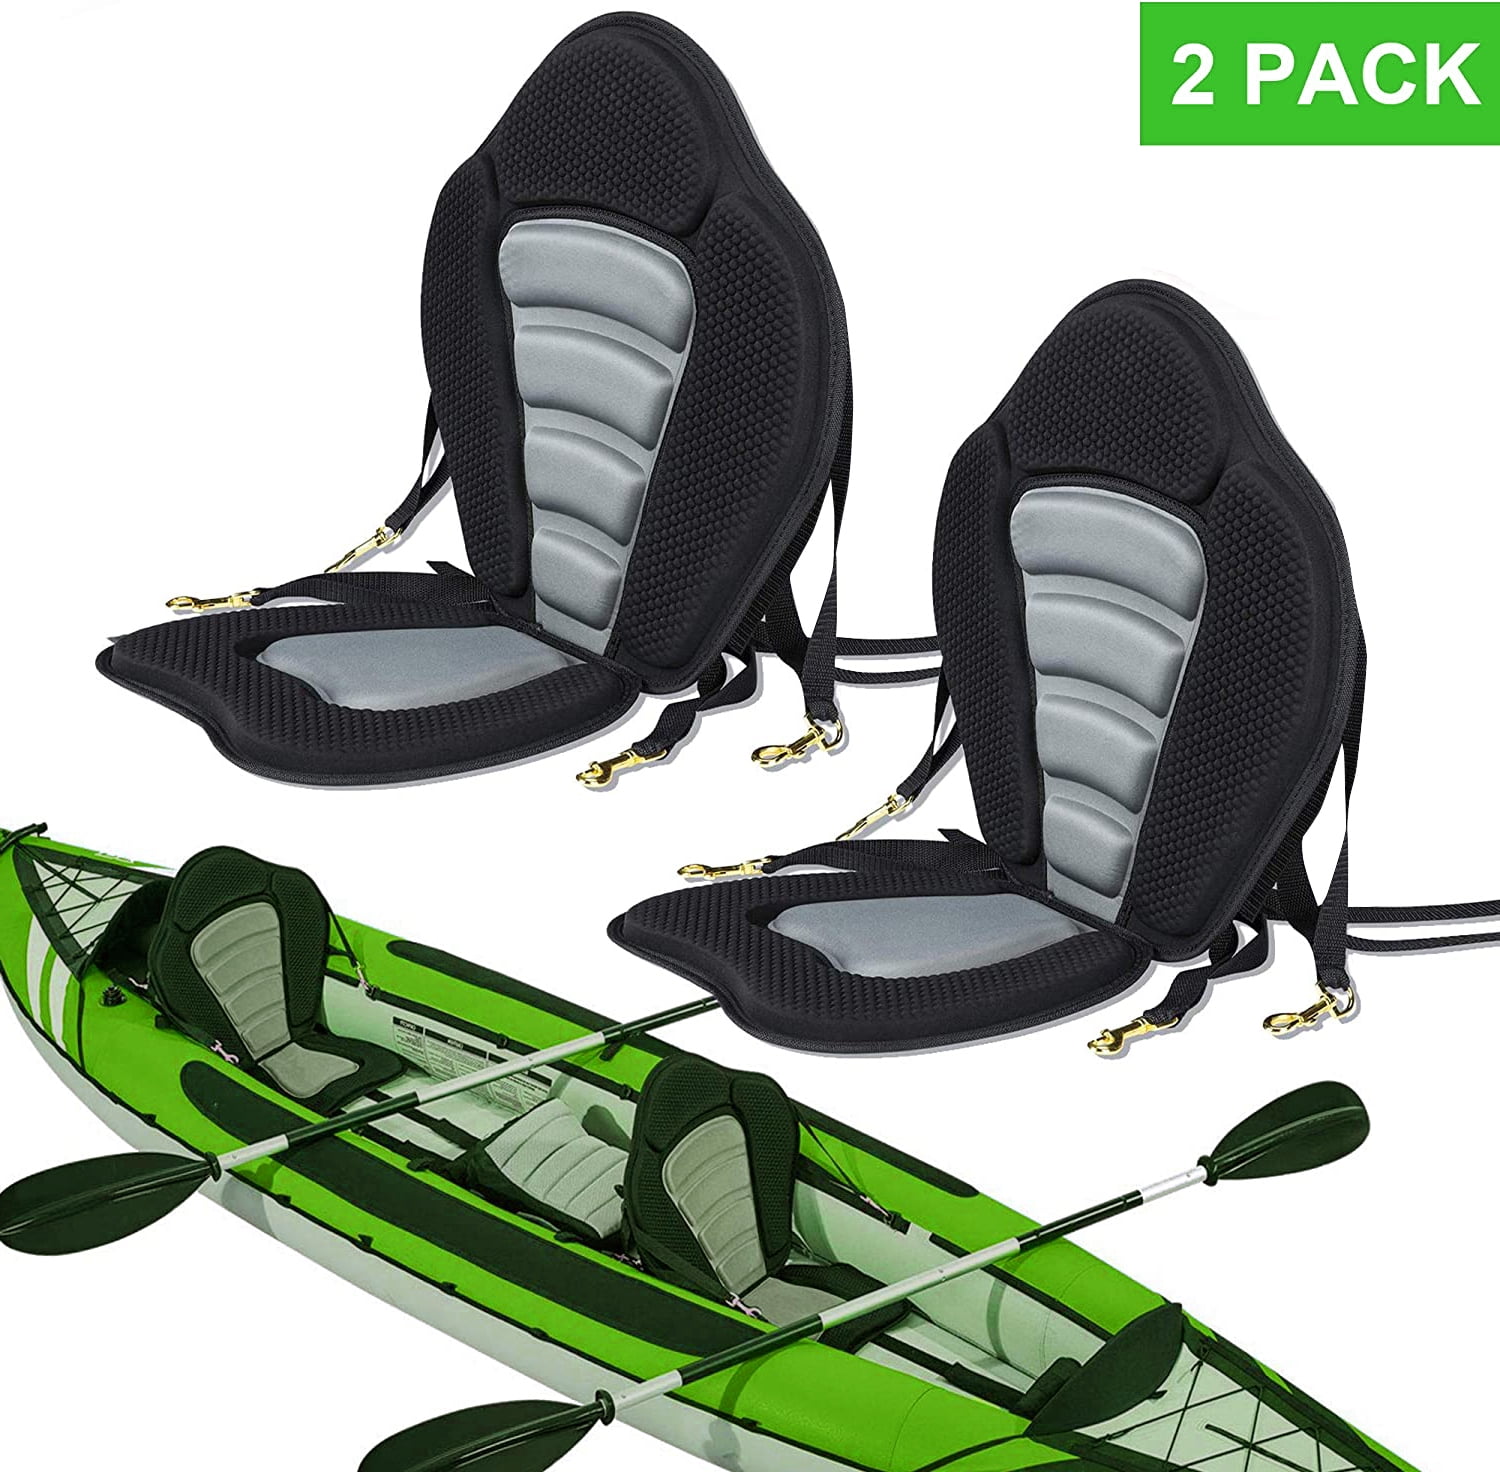 Kayak Adjustable Seat Detachable Back Padded Cushion Canoe Soft Comfort Backrest 